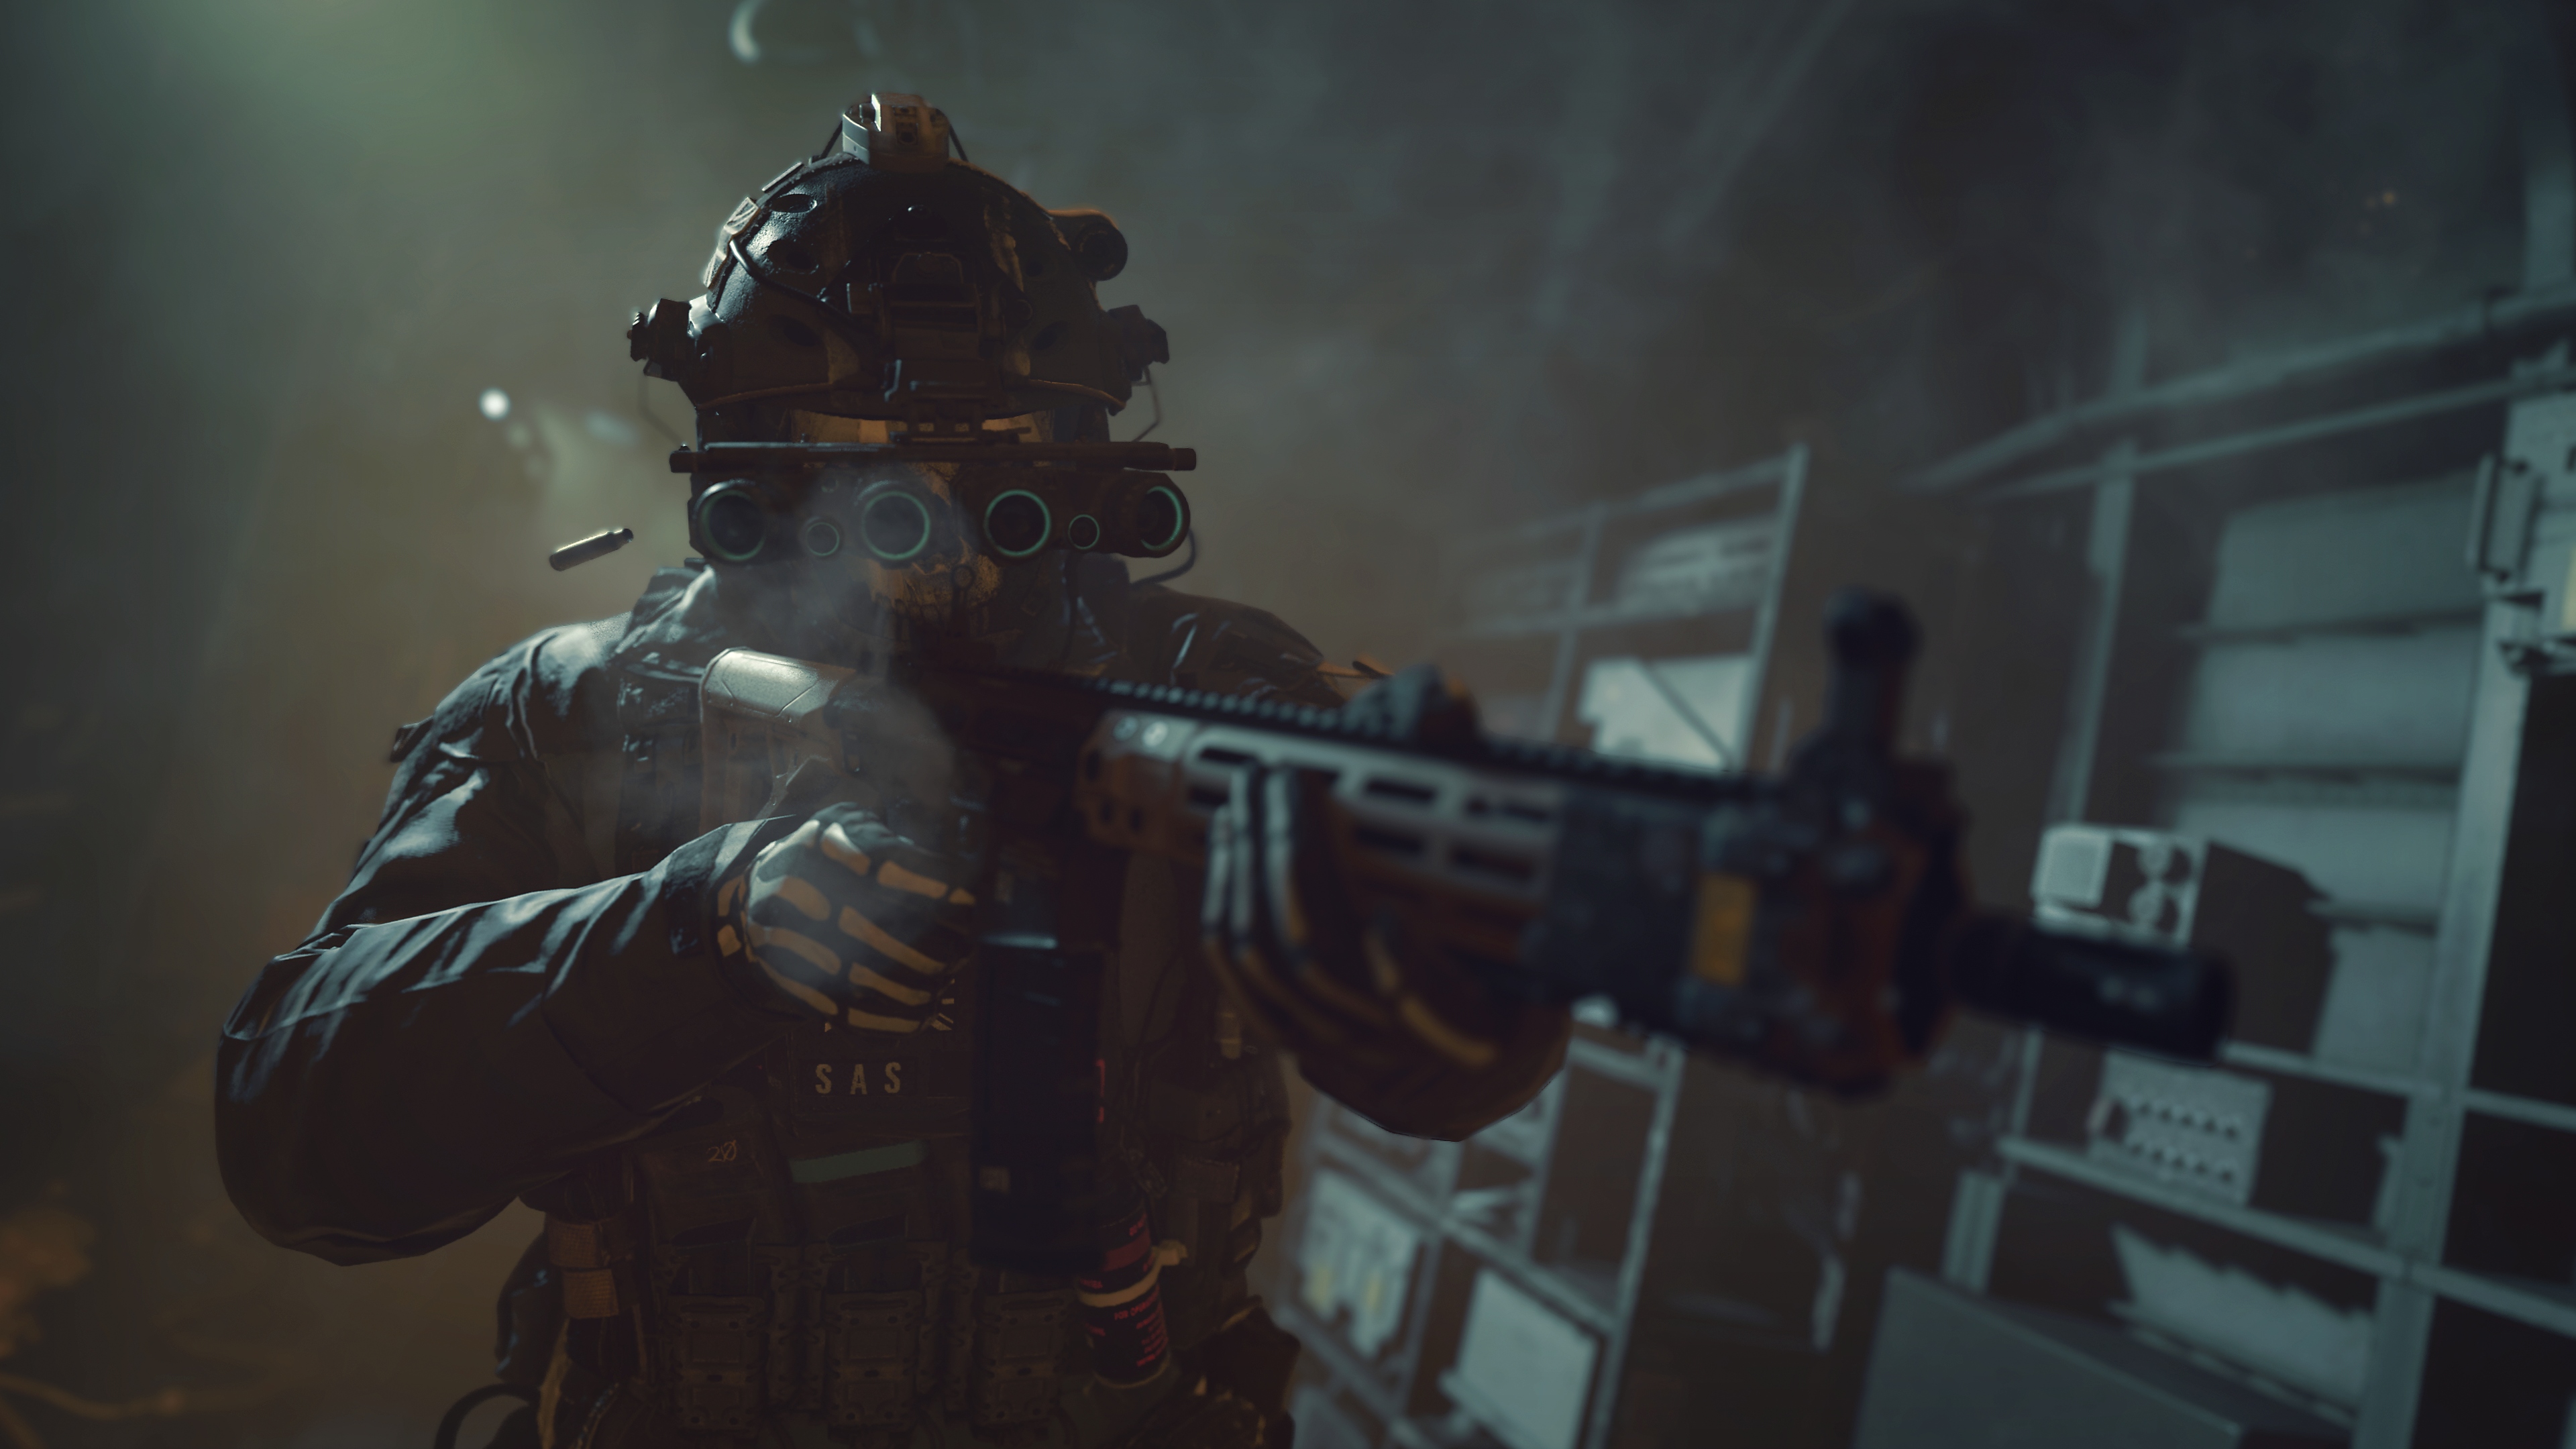 Call of Duty: Modern Warfare 2 2022 captura de pantalla mostrando a un personaje apuntando con un arma mientras lleva gafas de visión nocturna